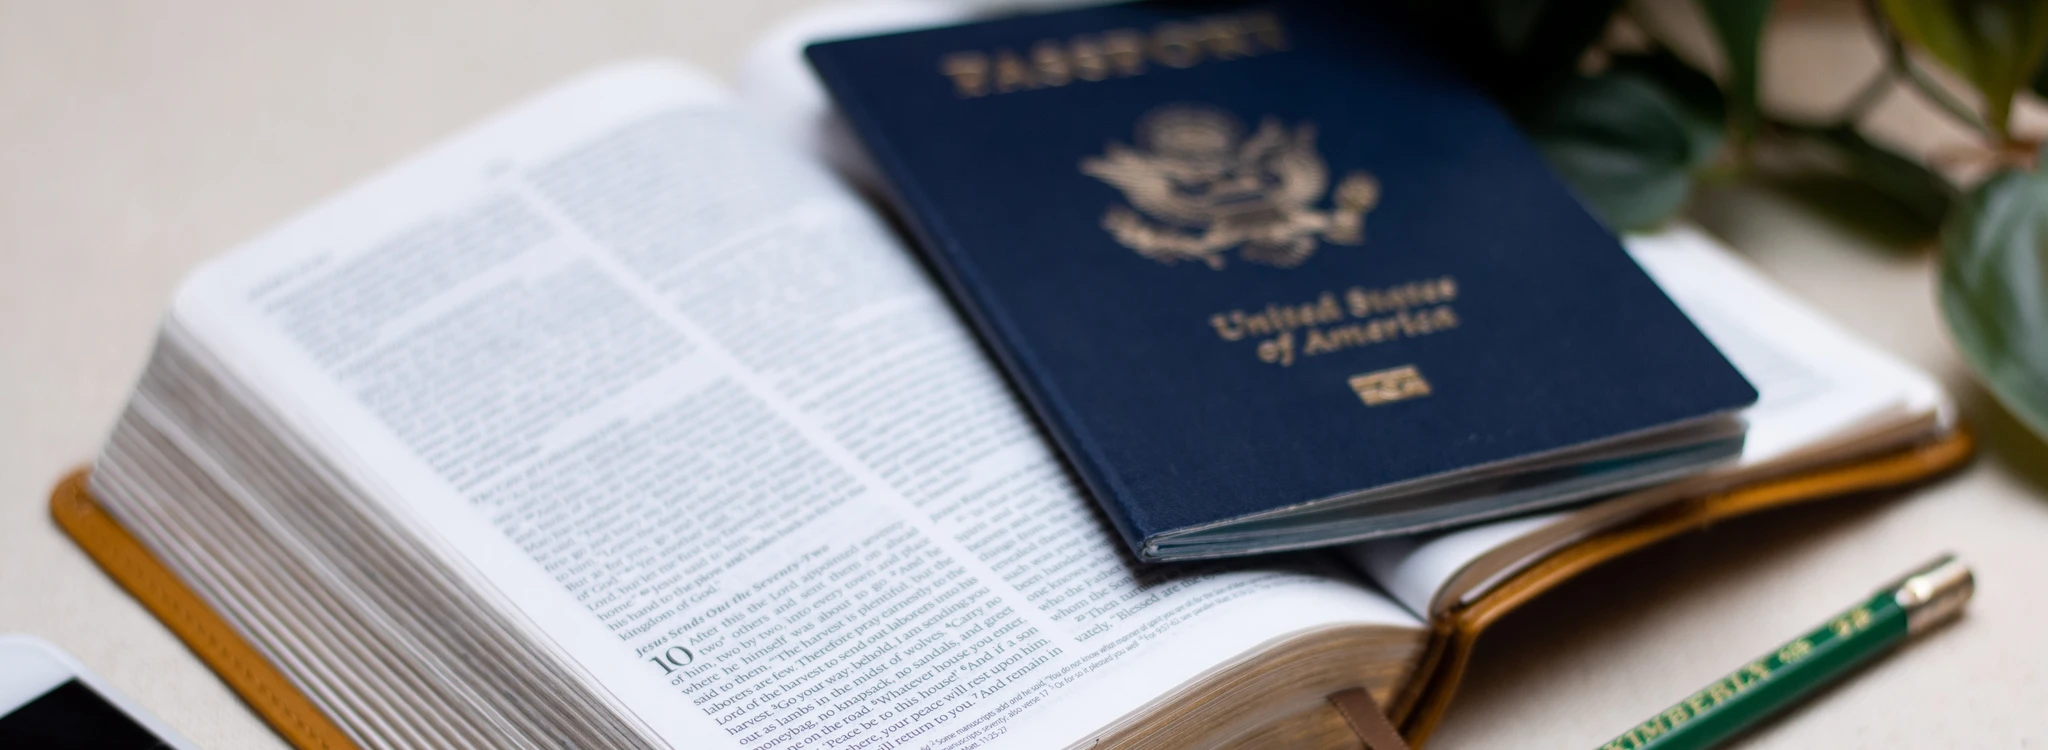 U.S. passport laying on a Bible open to Luke 10